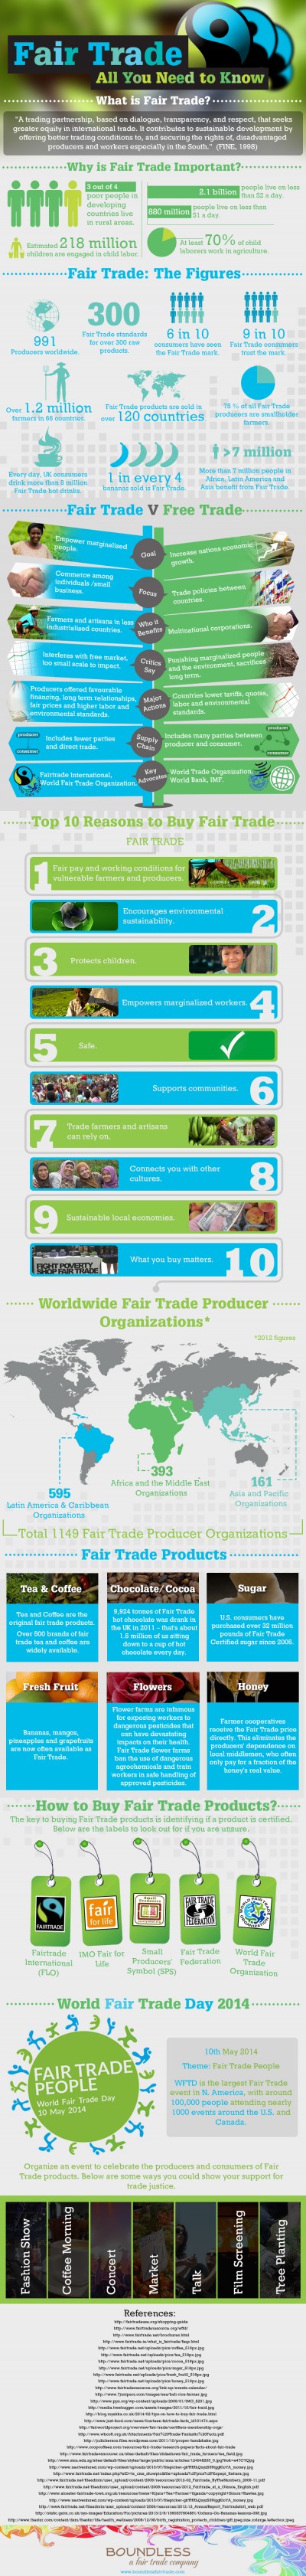 understanding_fair_trade